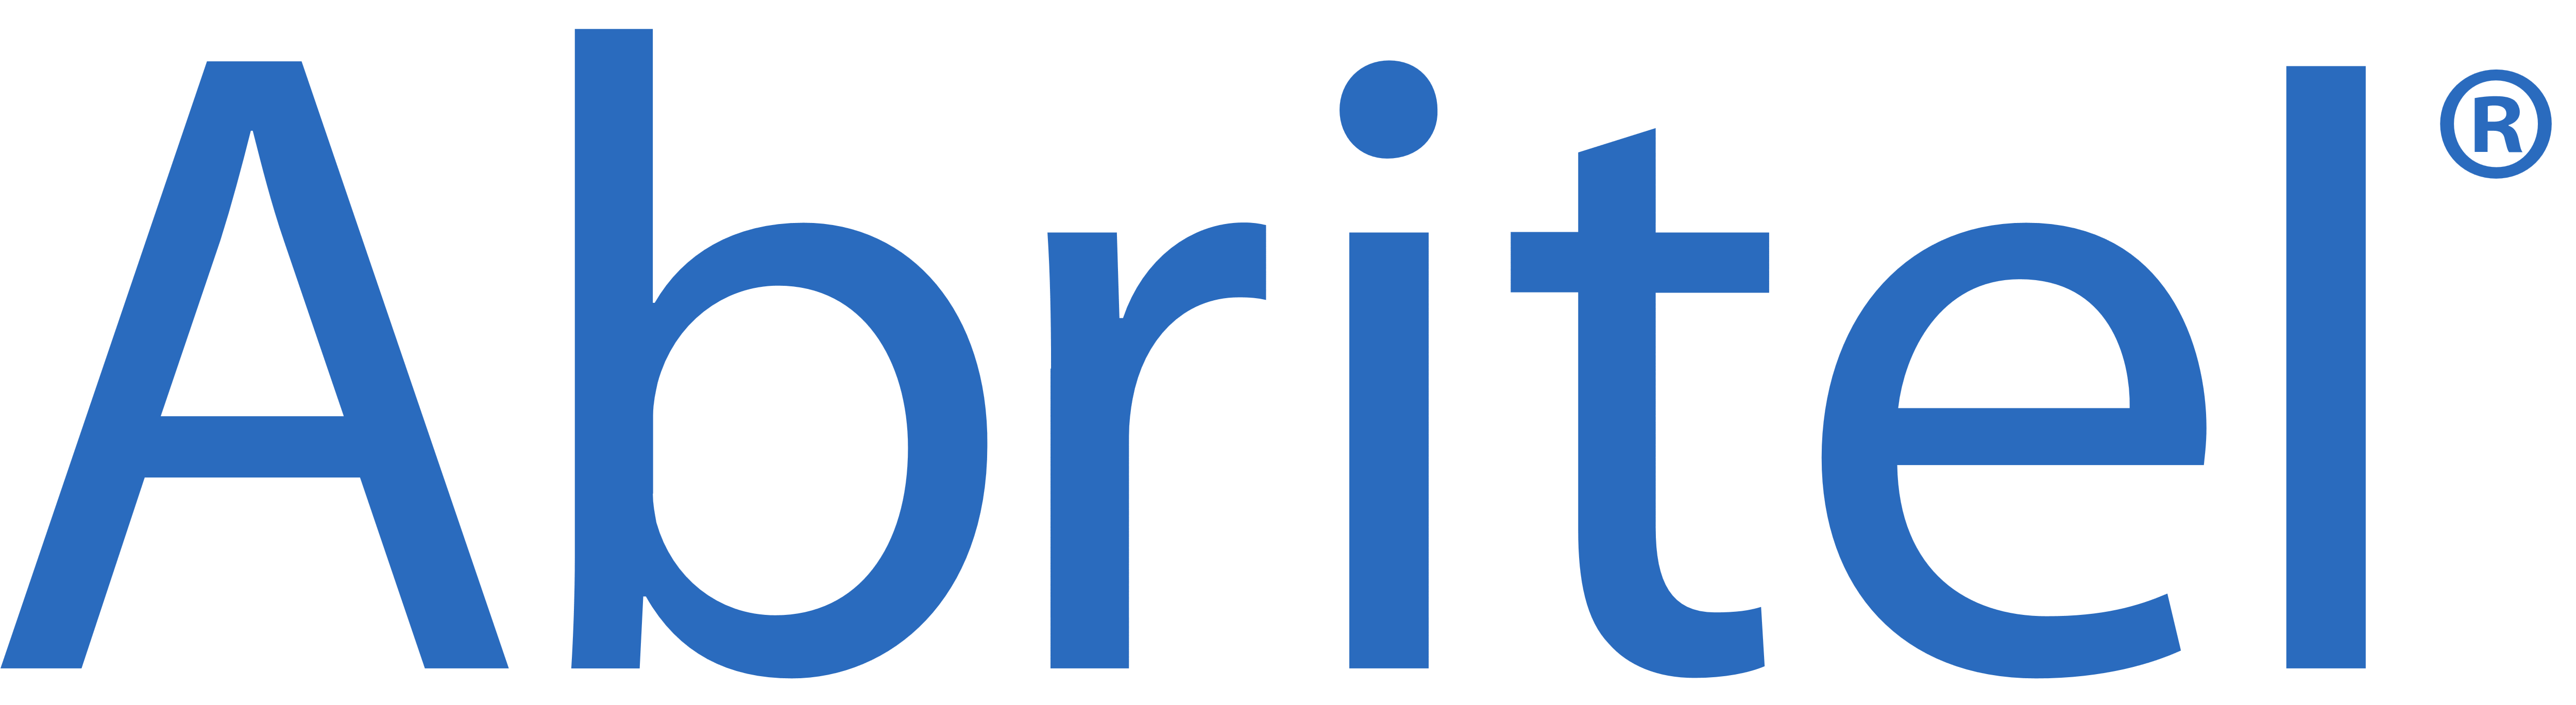 Logo Abritel